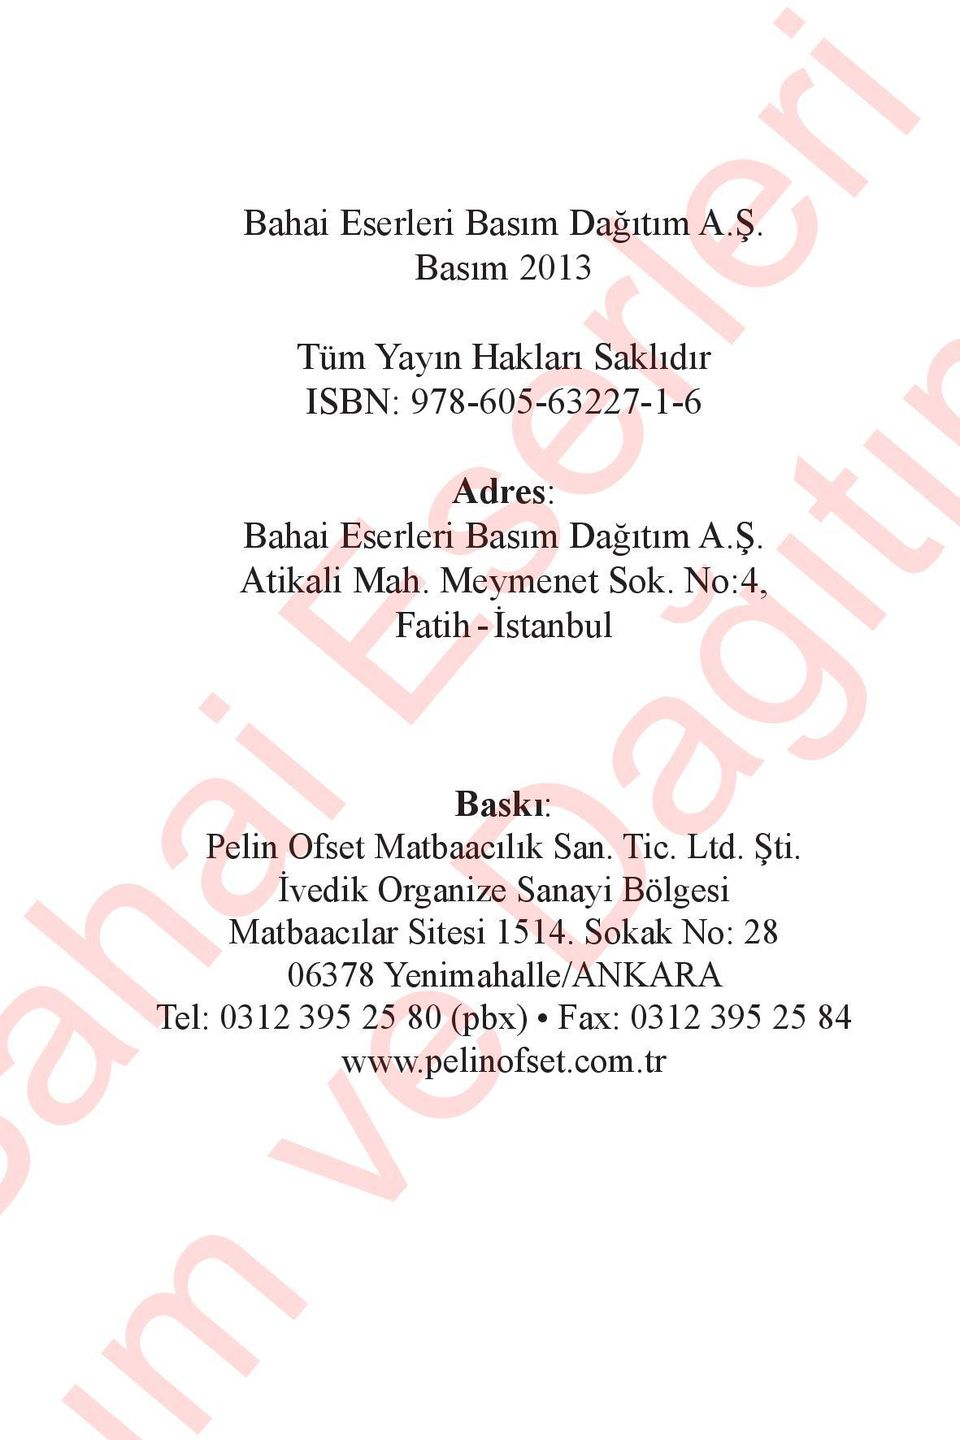 Meymenet Sok. No:4, Fatih - İstanbul Baskı: Pelin Ofset Matbaacılık San. Tic. Ltd. Şti.